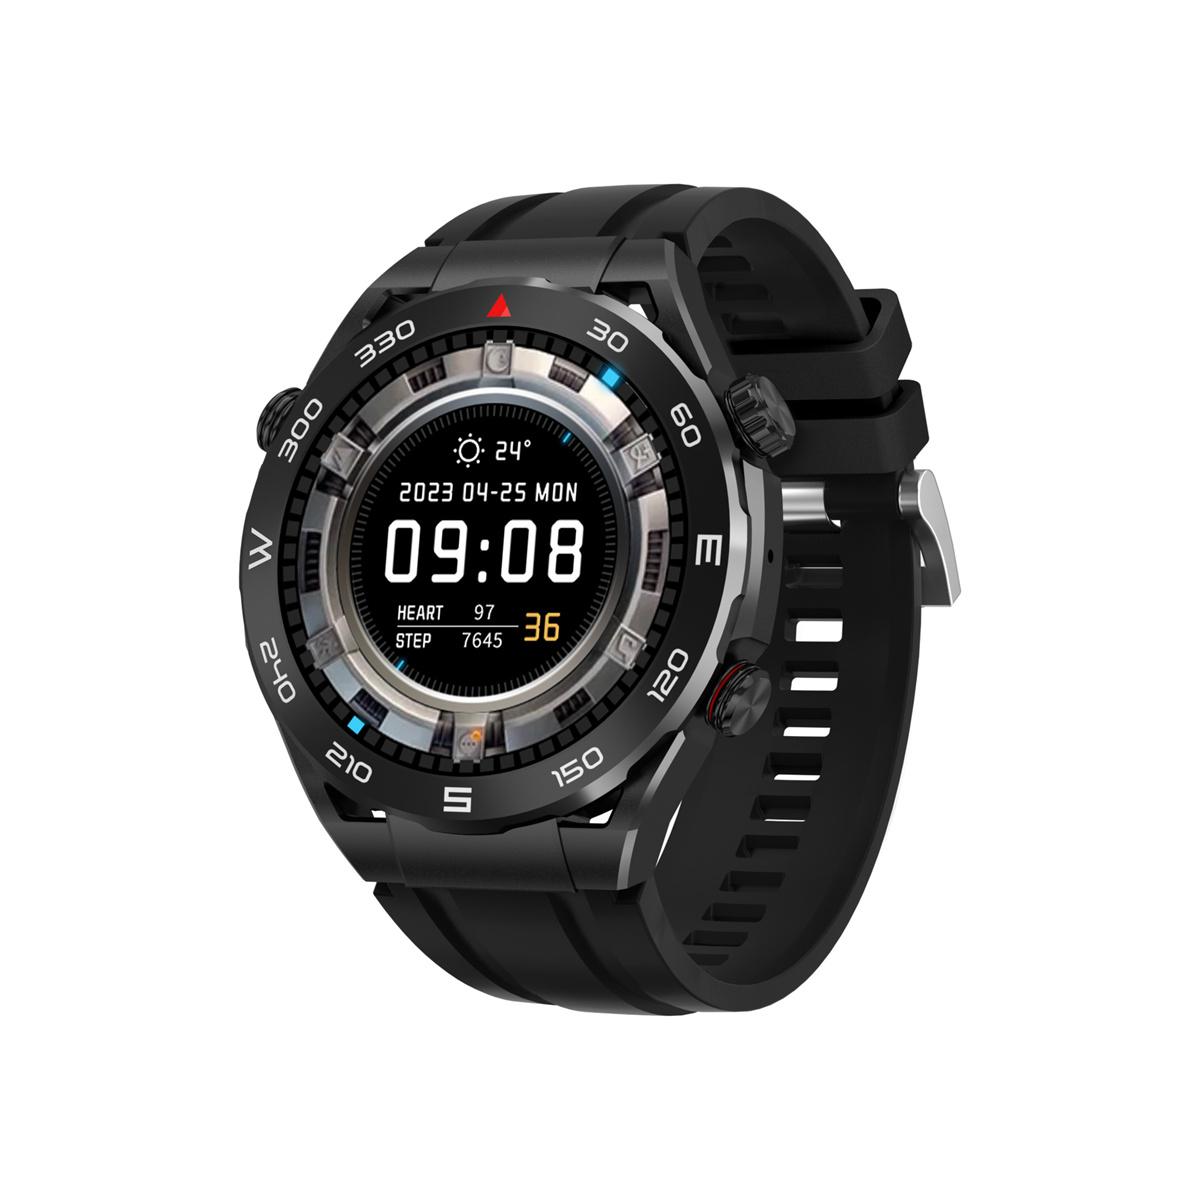 BRIGHTAKE Smart Watch Schwarz Bluetooth Paypal Uhr Sport NFC schwarz Talk Watch Aufzeichnung Kieselgel, Schrittzähler Smart